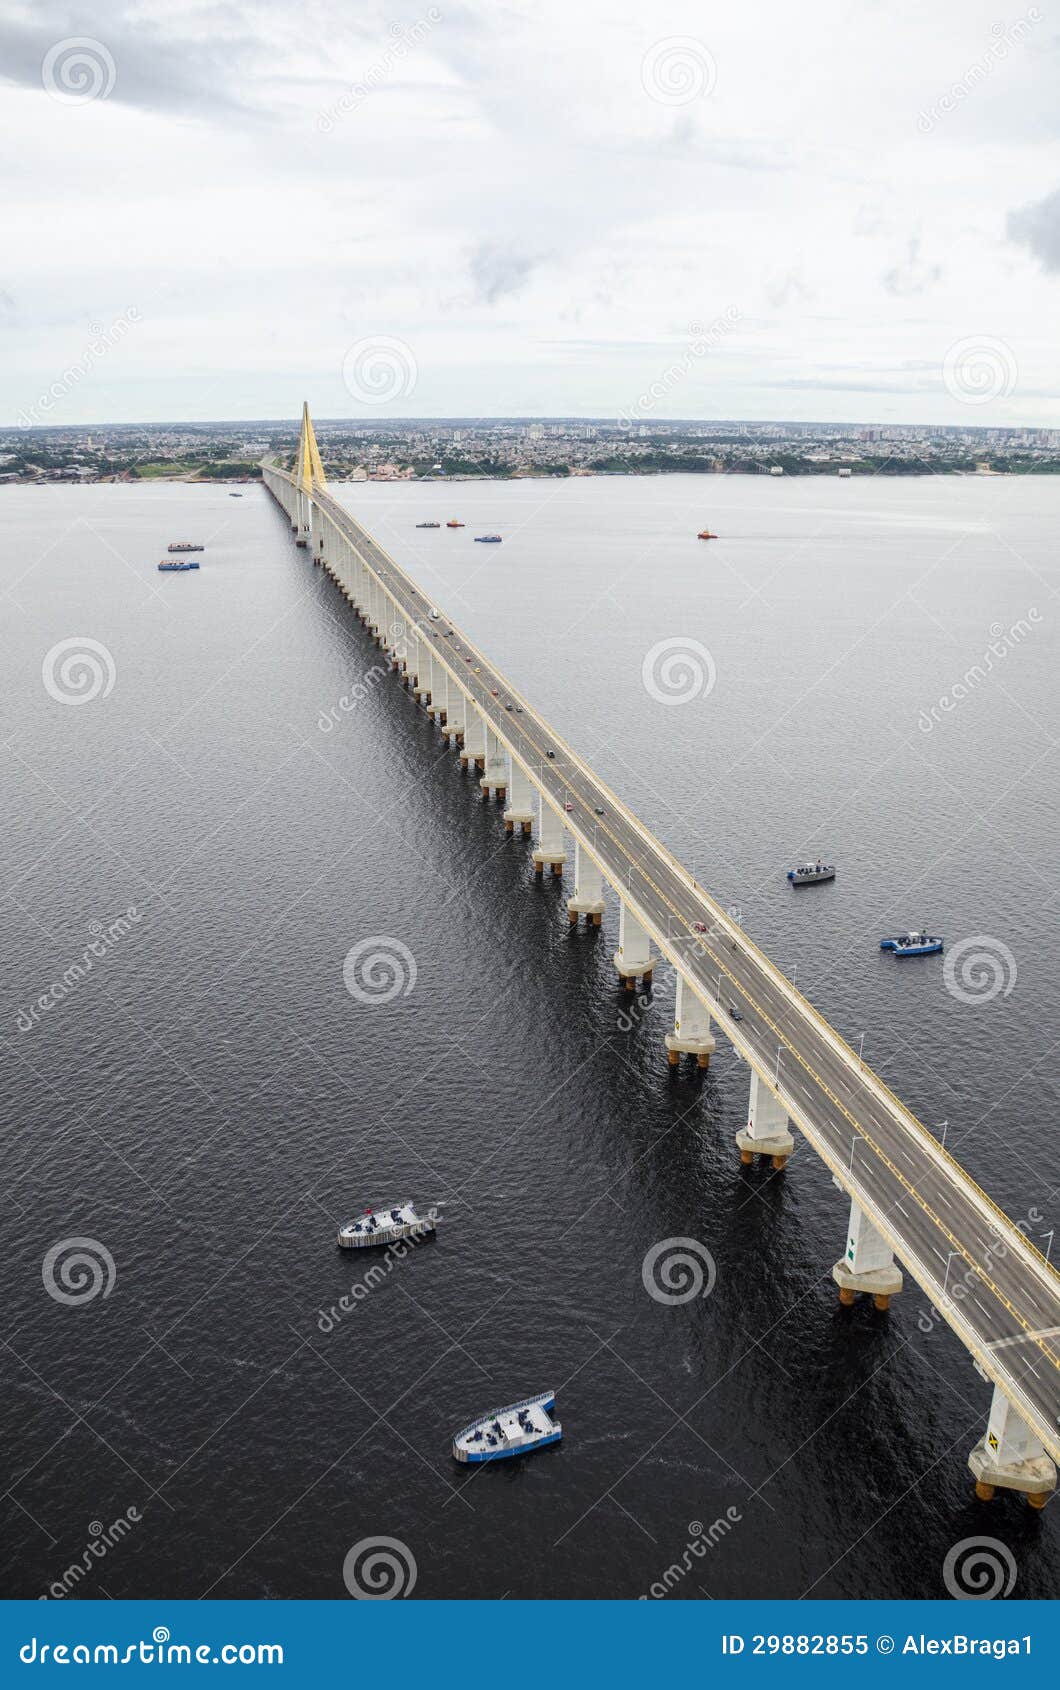 manaus-iranduba bridge over negro river.